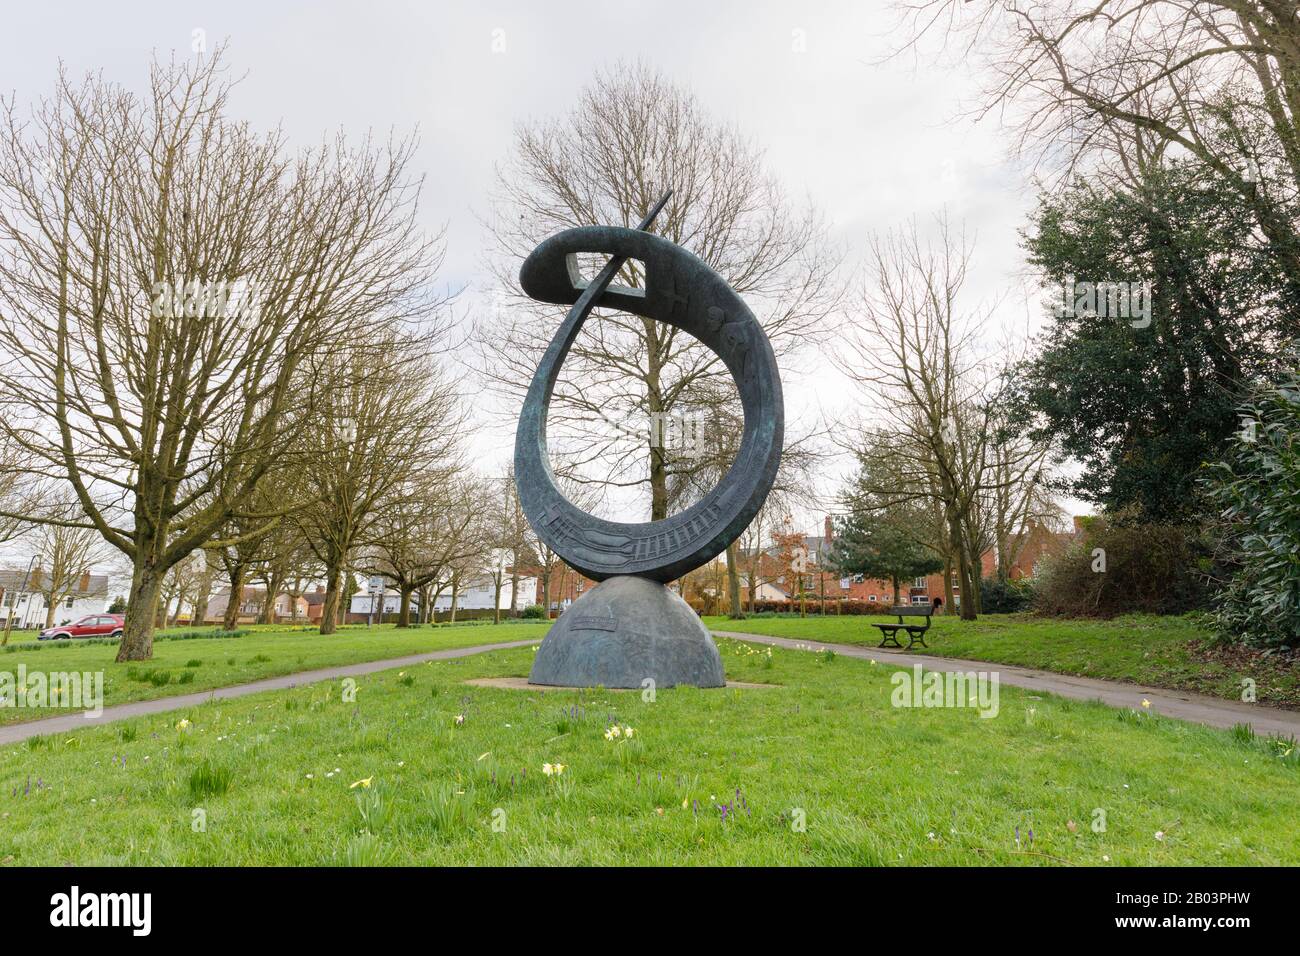 Rugby, Reino Unido, 2020 de febrero: Sir Frank Whittle Memorial escultura de Stephen Broadbent se encuentra en El espacio público De Chestnut Fields rodeado de árboles maduros. Foto de stock